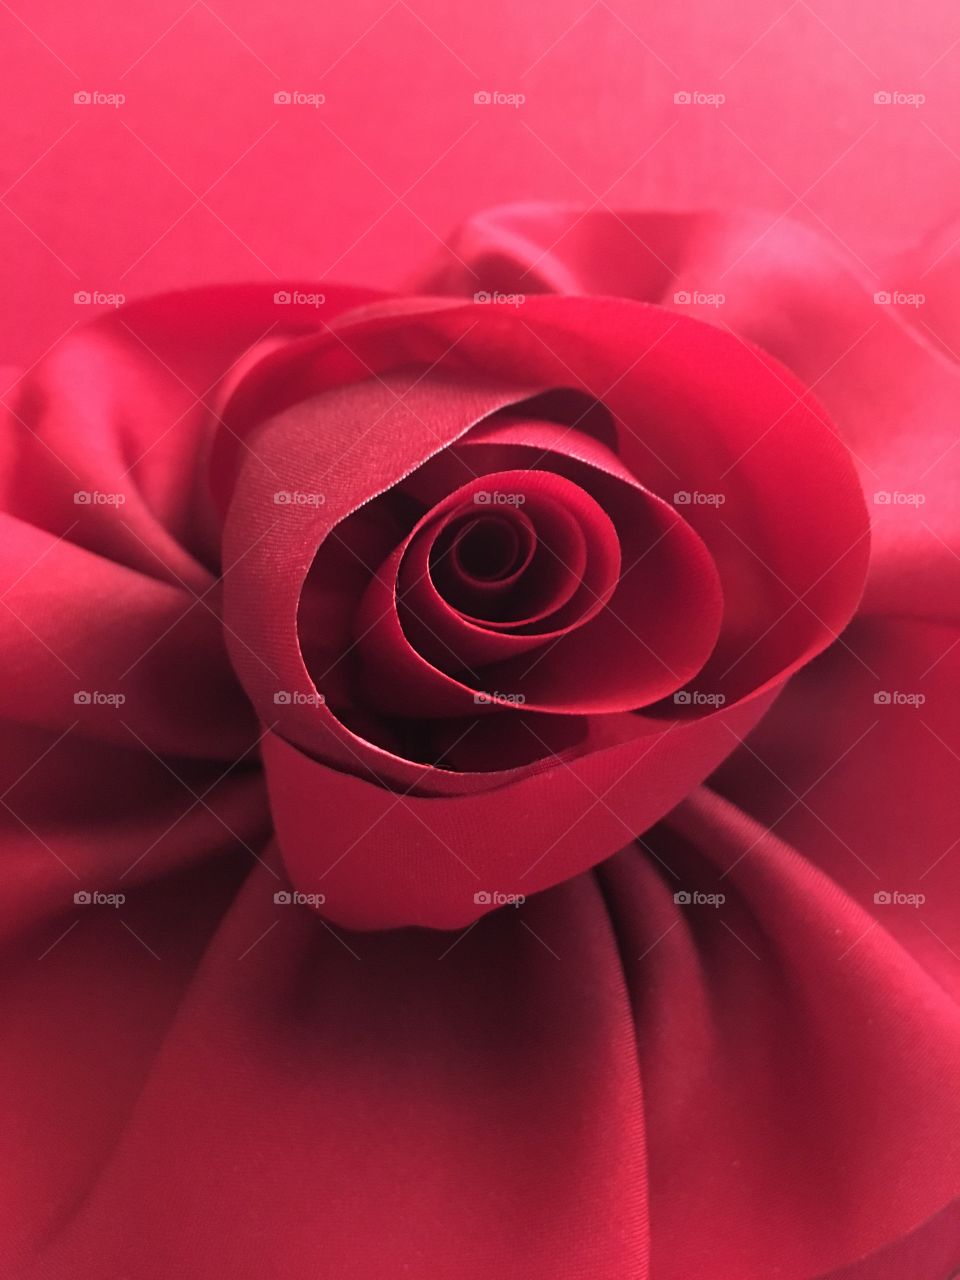 Satin rose